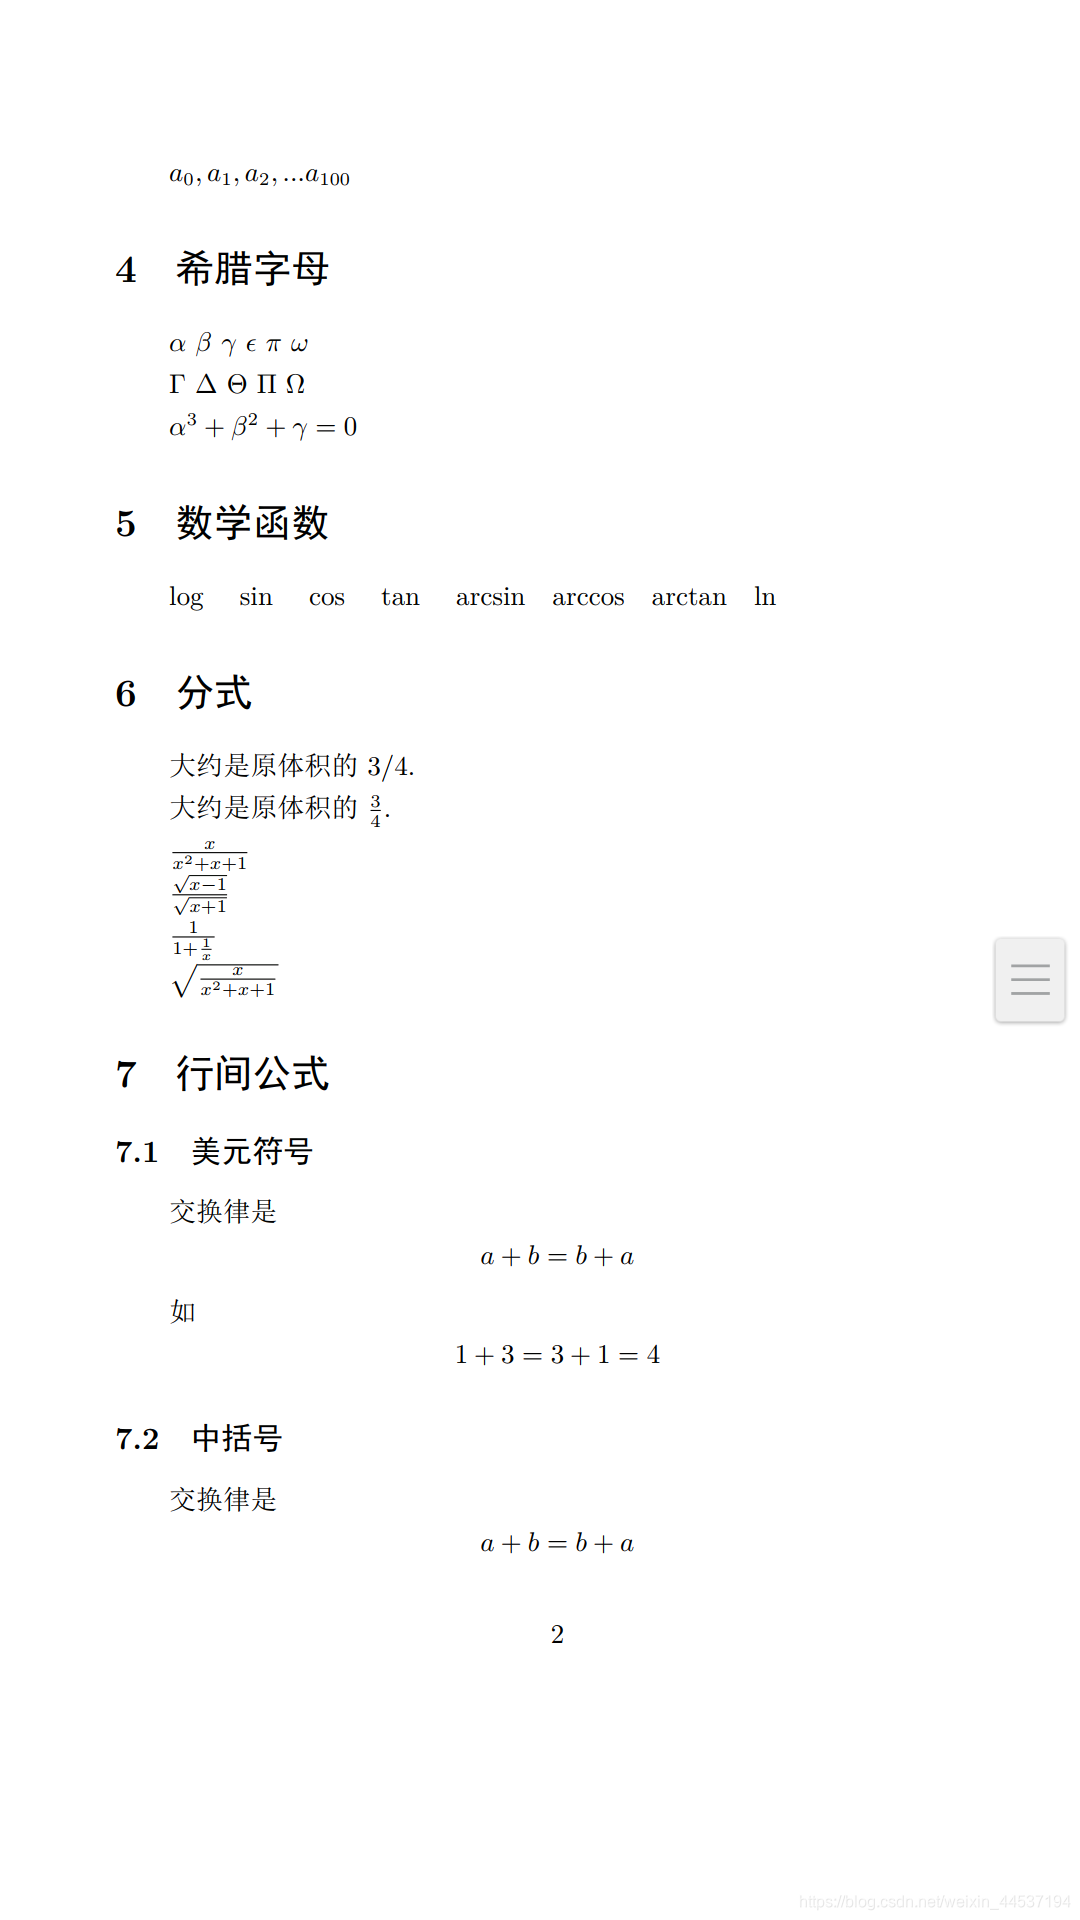 第九节 Latex中数学公式的编排 Guo Ping Blog 程序员宝宝 Latex数学公式排版 程序员宝宝